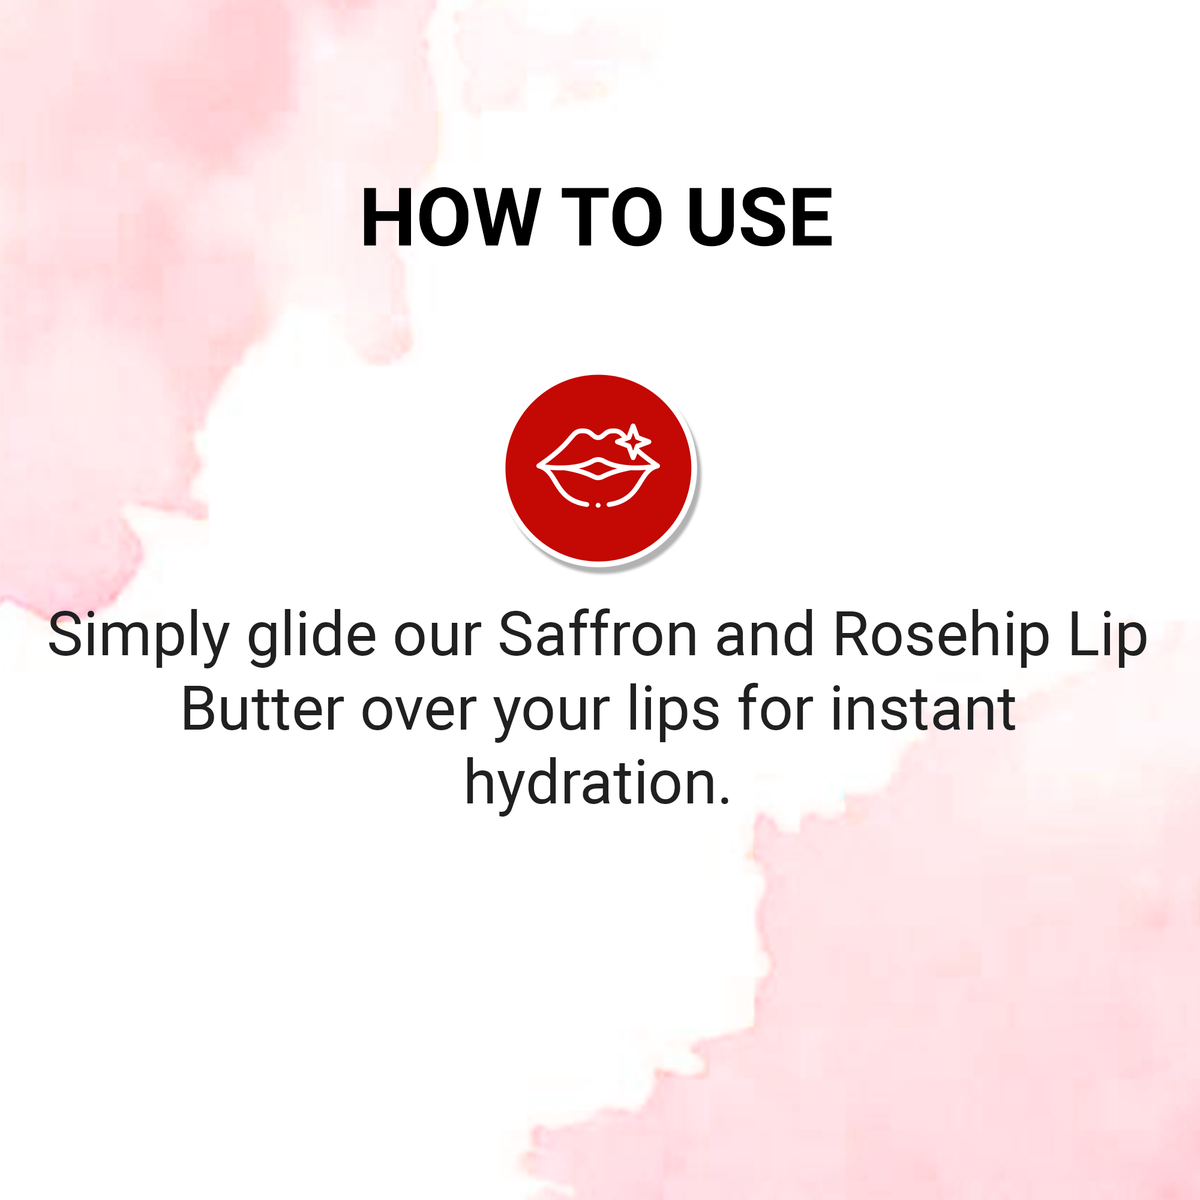 Saffron and Rosehip Lip Butter